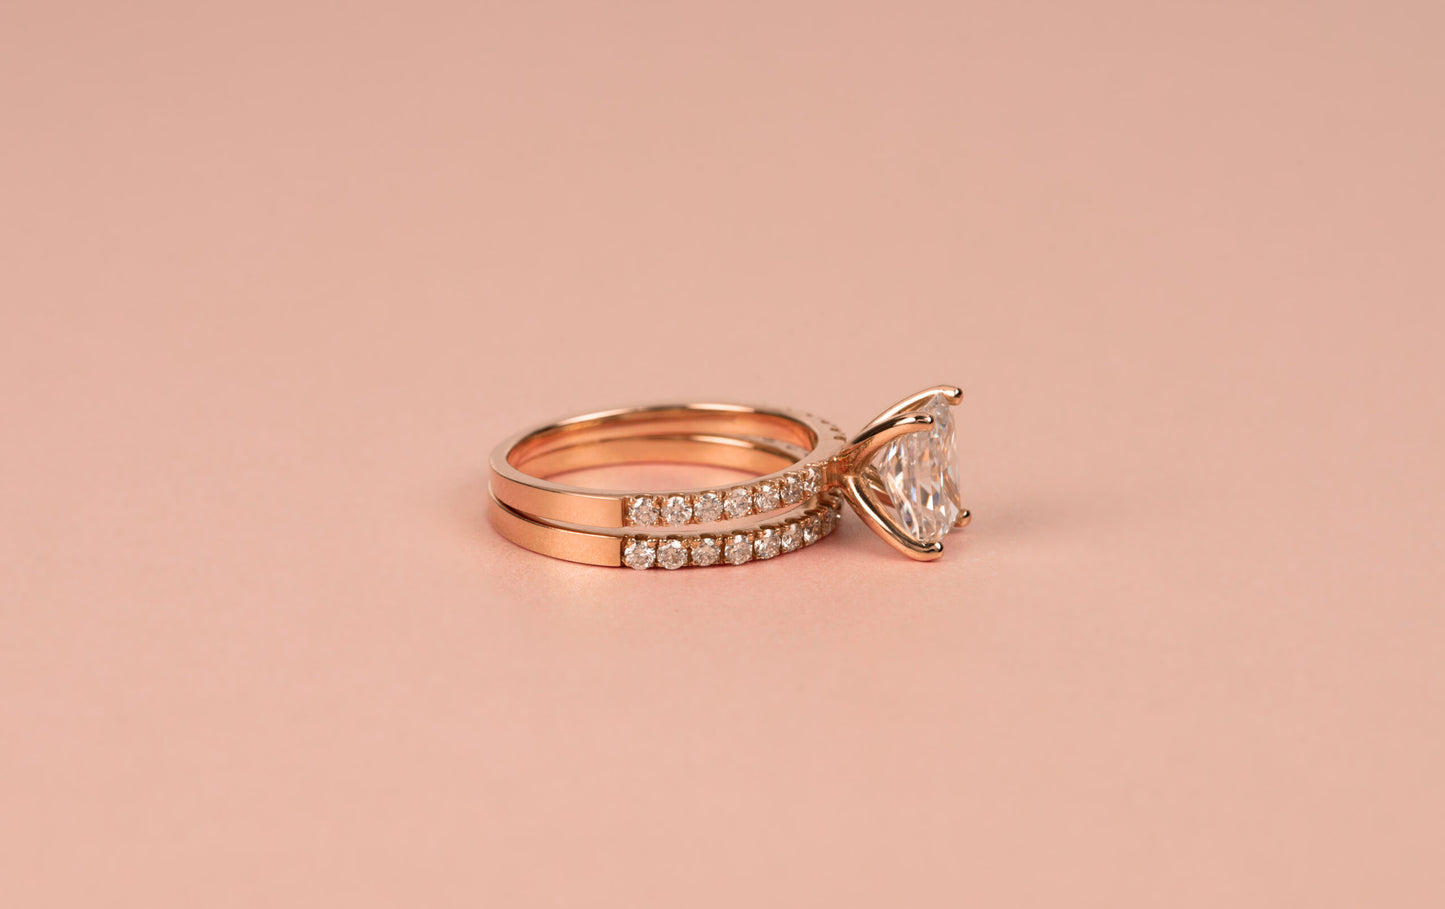 14K Rose Gold Diamond Engagement Ring Set